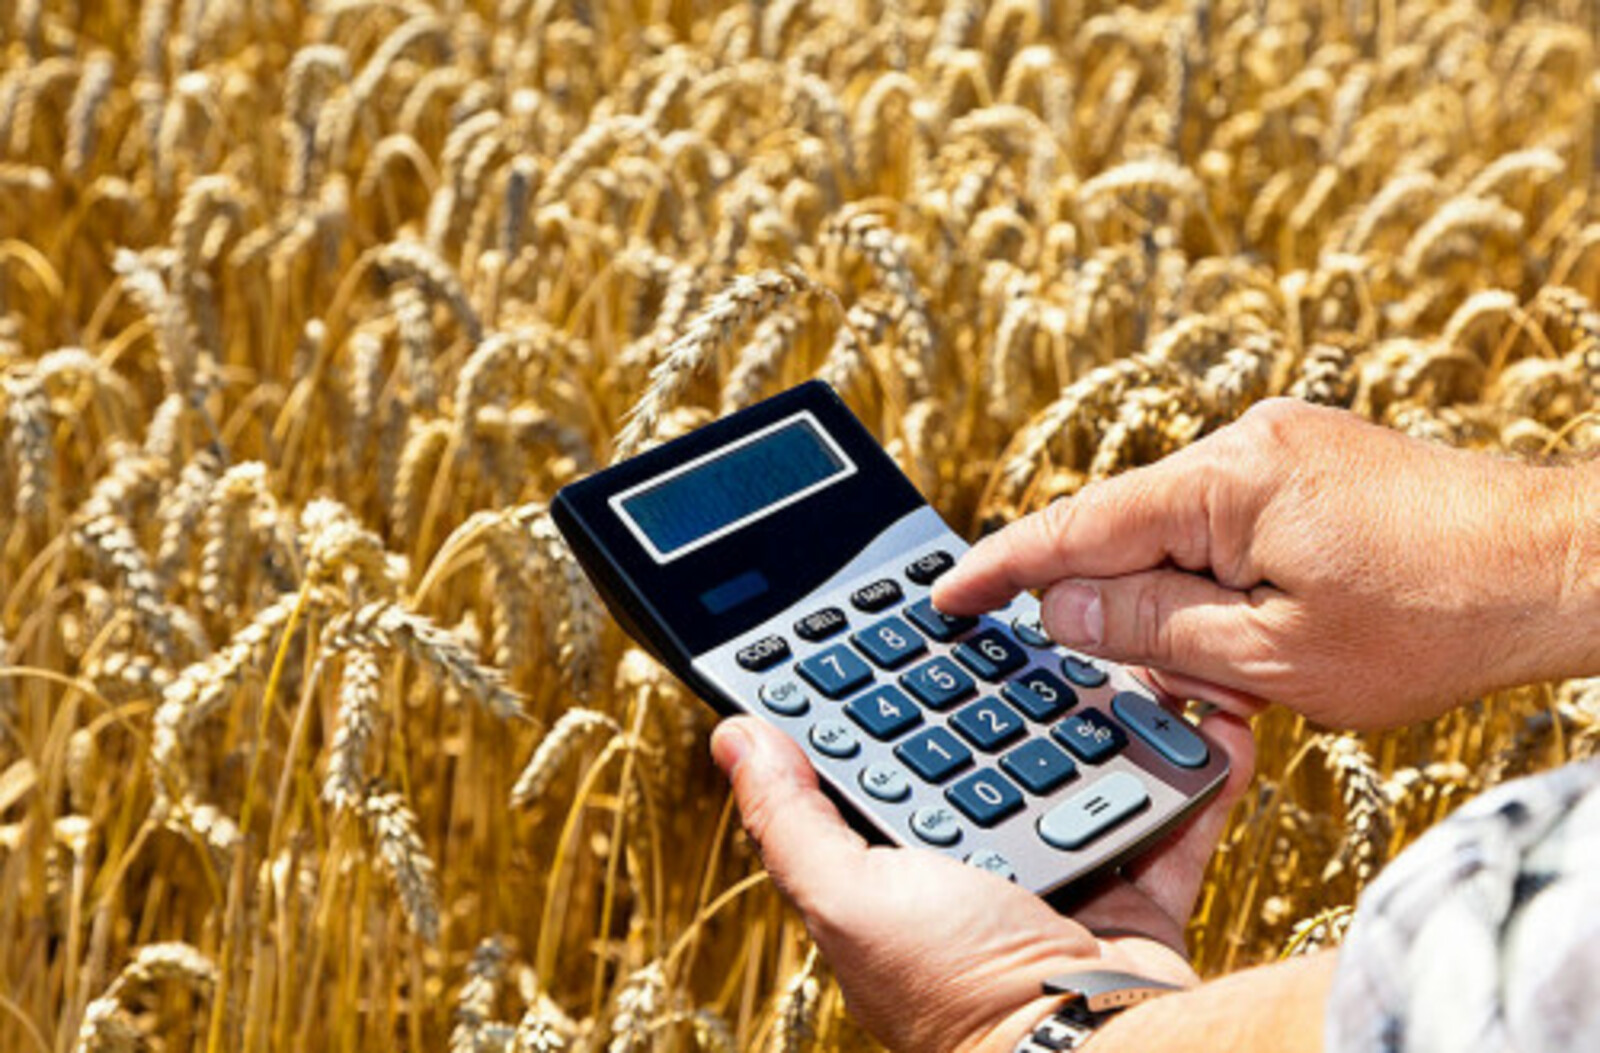 В Башкортостане начался приём заявок на гранты для семейных ферм, сельхозпотребкооперативов и «Агропрогресс»